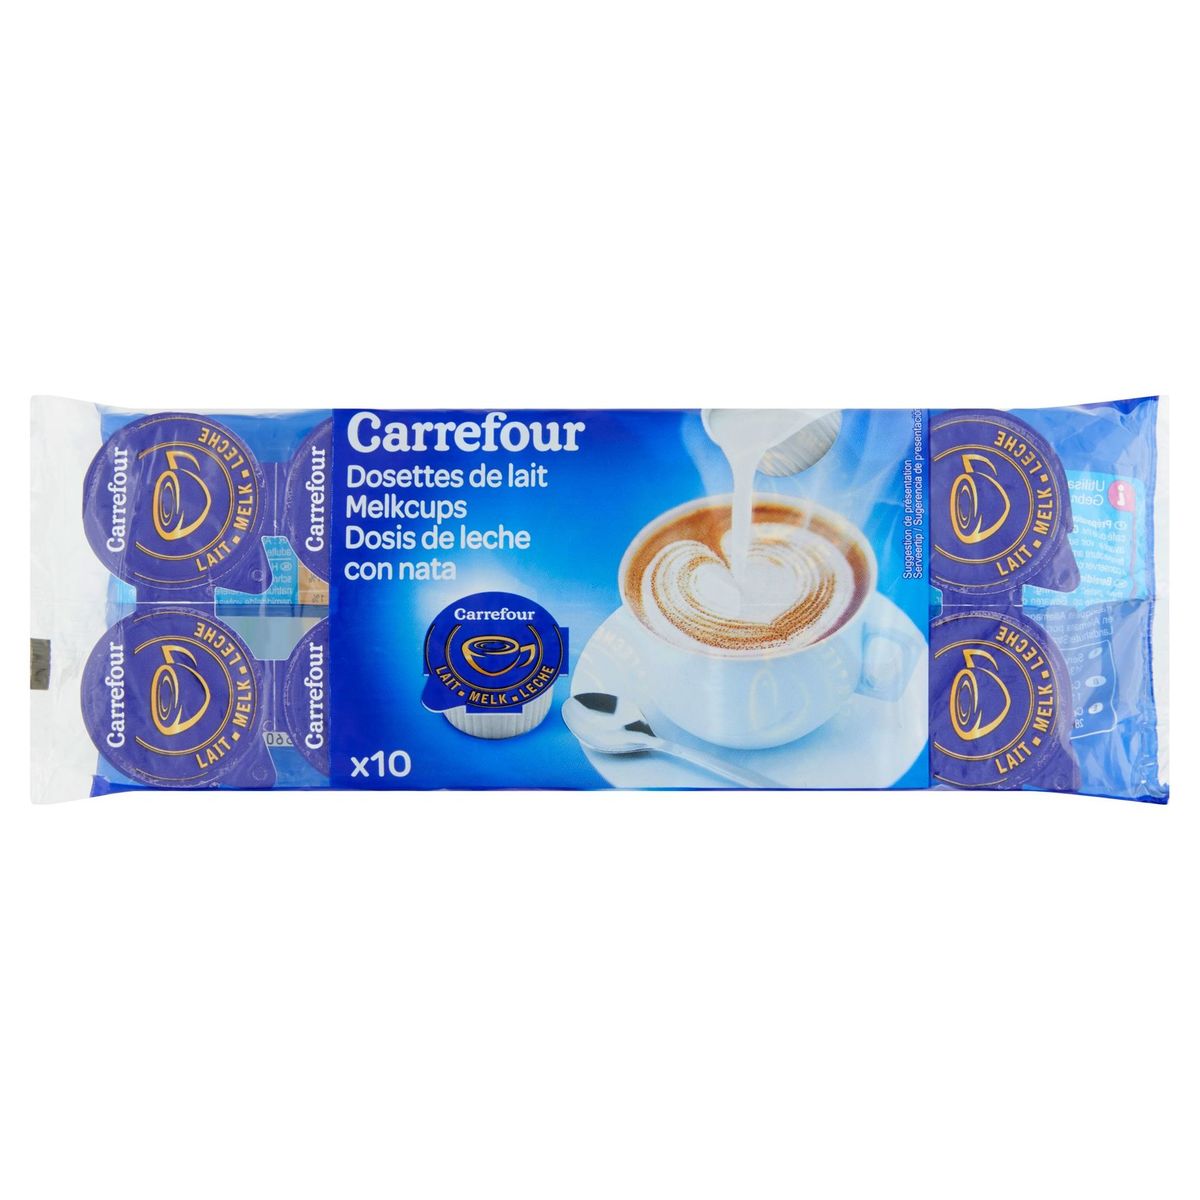 Carrefour Dosettes de Lait 10 x 9.7 ml